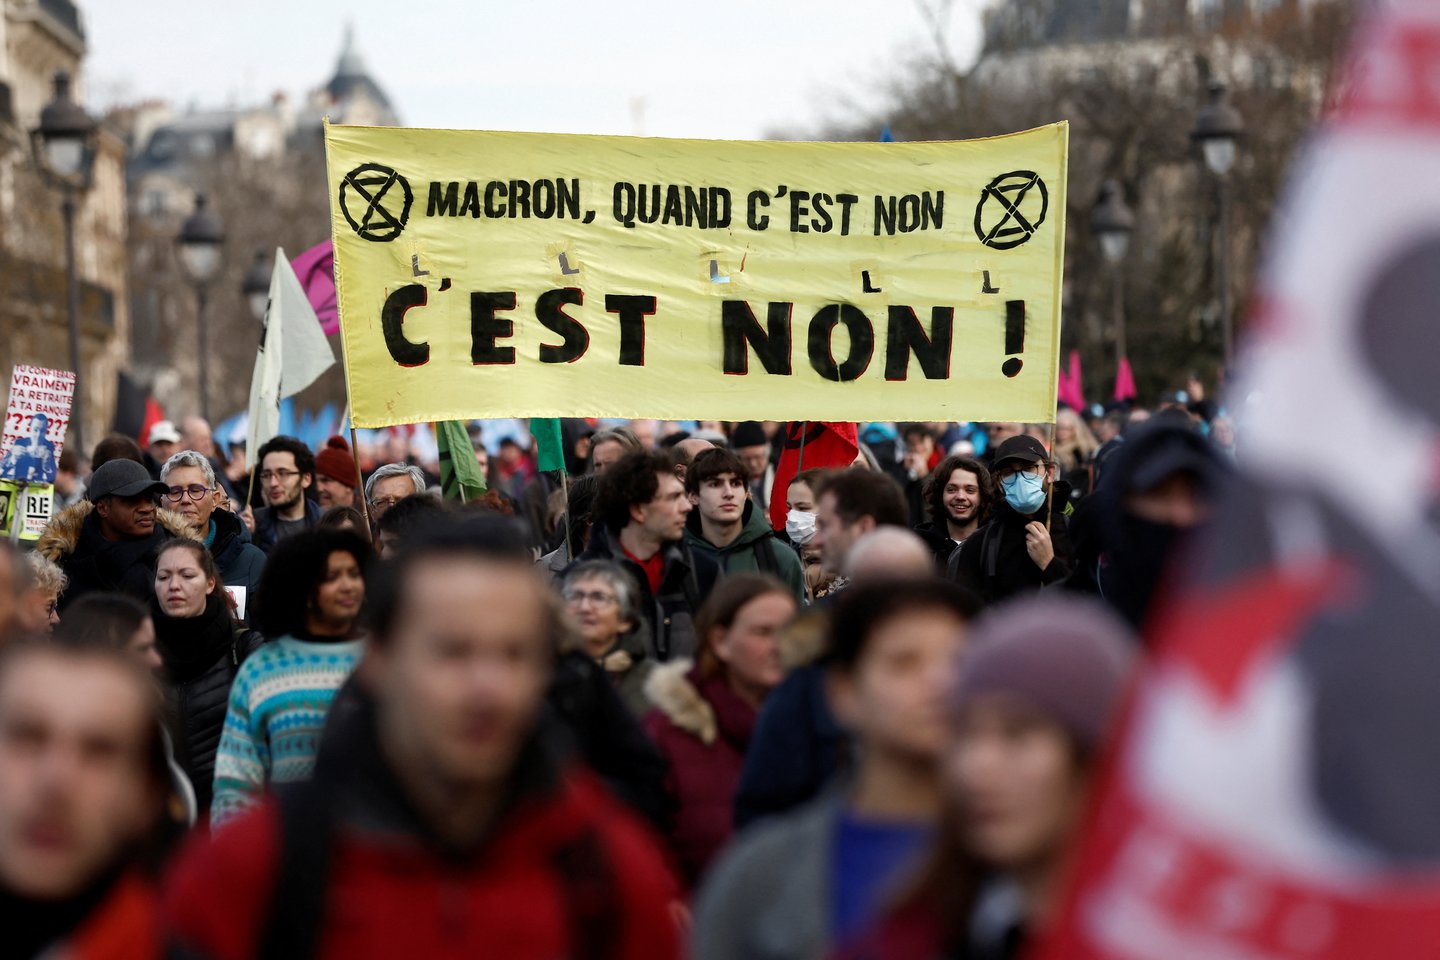 Prancūzijoje ketvirtadienį dešimtys tūkstančių žmonių vėl išėjo į gatves, protestuodami prieš planuojamą pensijų reformą. Didesni mitingai vyko Marselyje, Reno ir Bordo miestuose. Be to, darbą nutraukė oro uostų, energetikos sektoriaus ir geležinkelio darbuotojai.<br>Reuters/Scanpix nuotr.